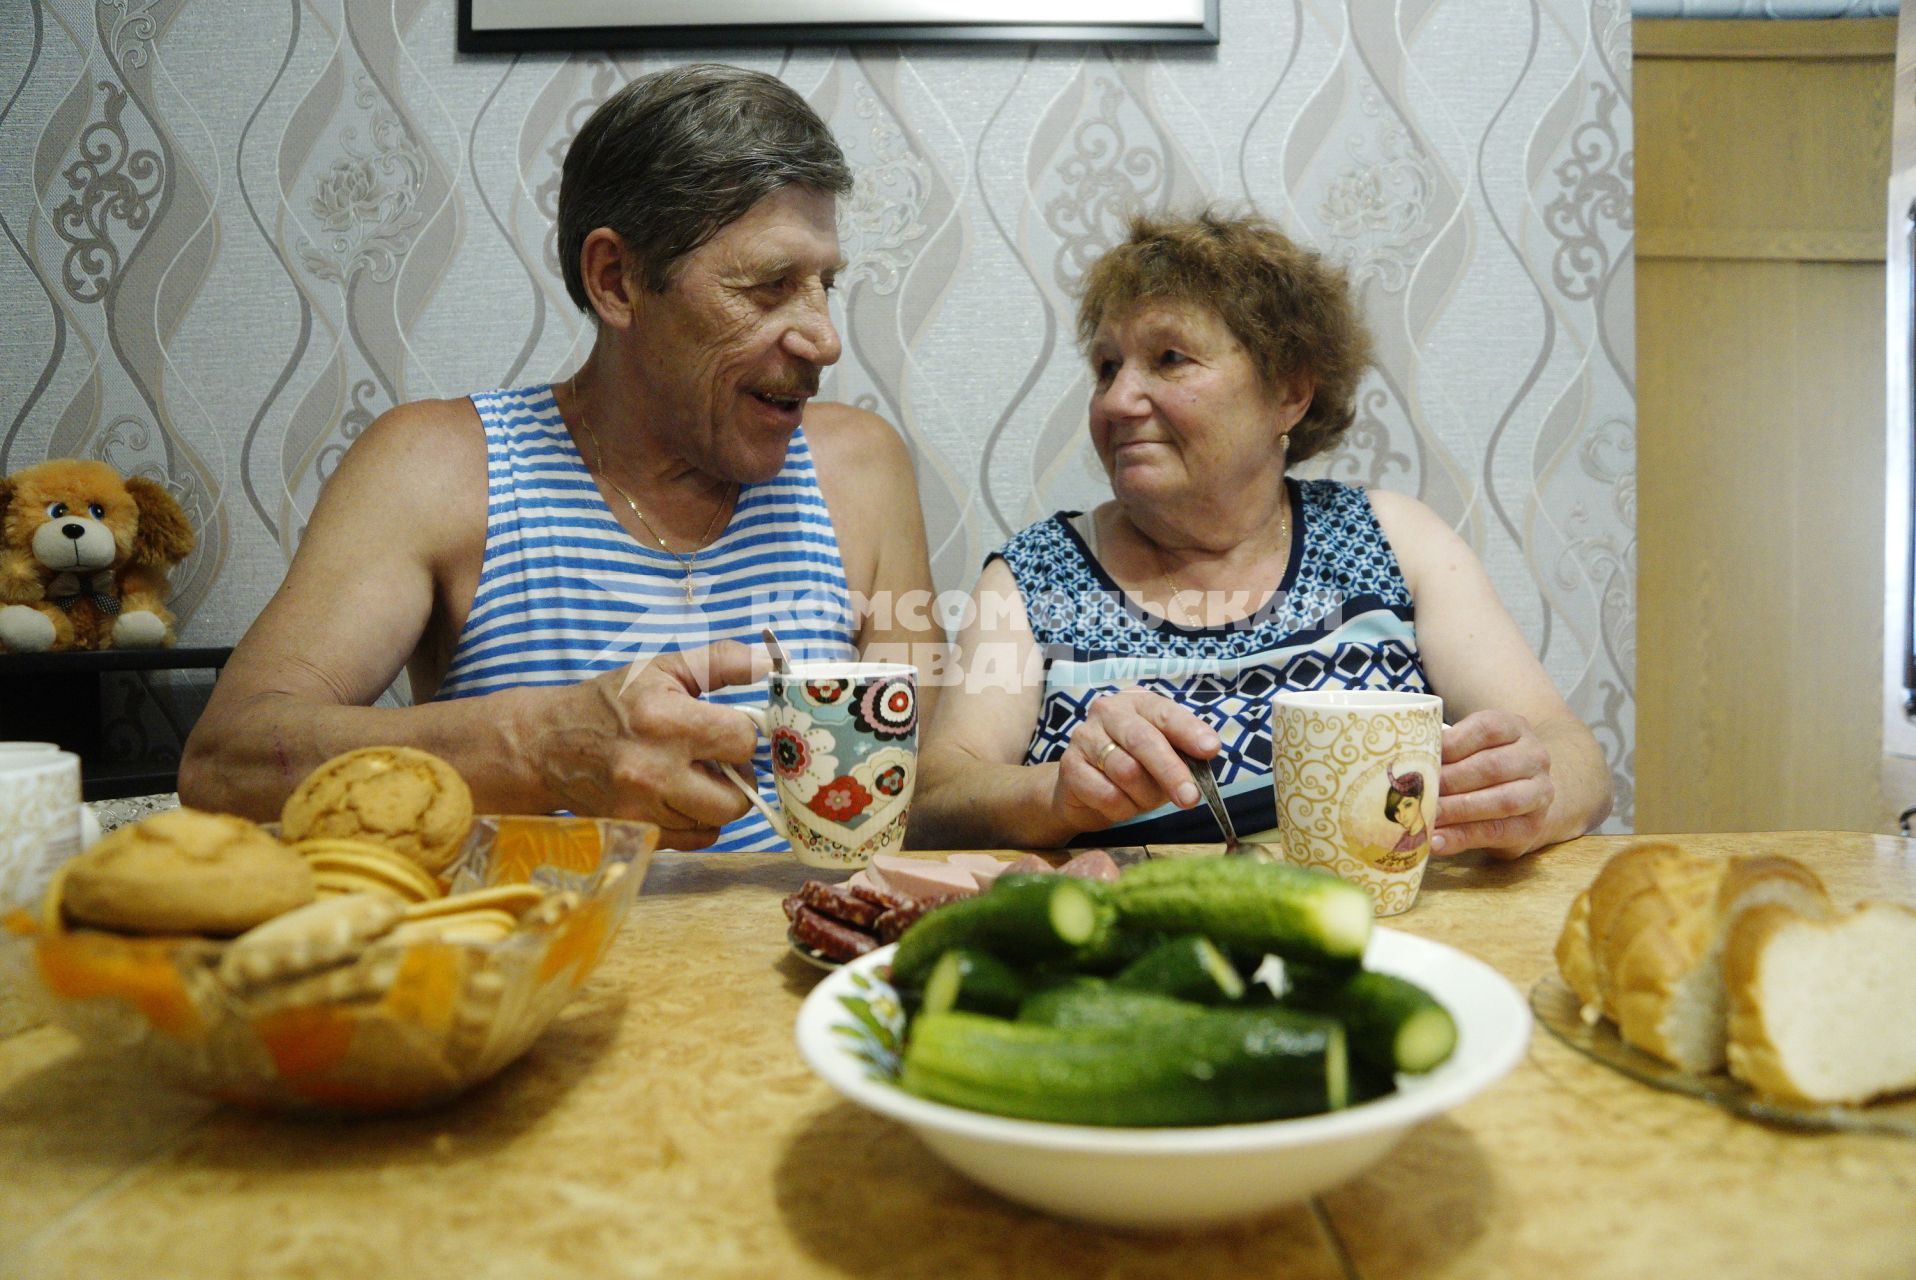 Екатеринбург. Пенсионеры пьют чай в своем дачном  домике